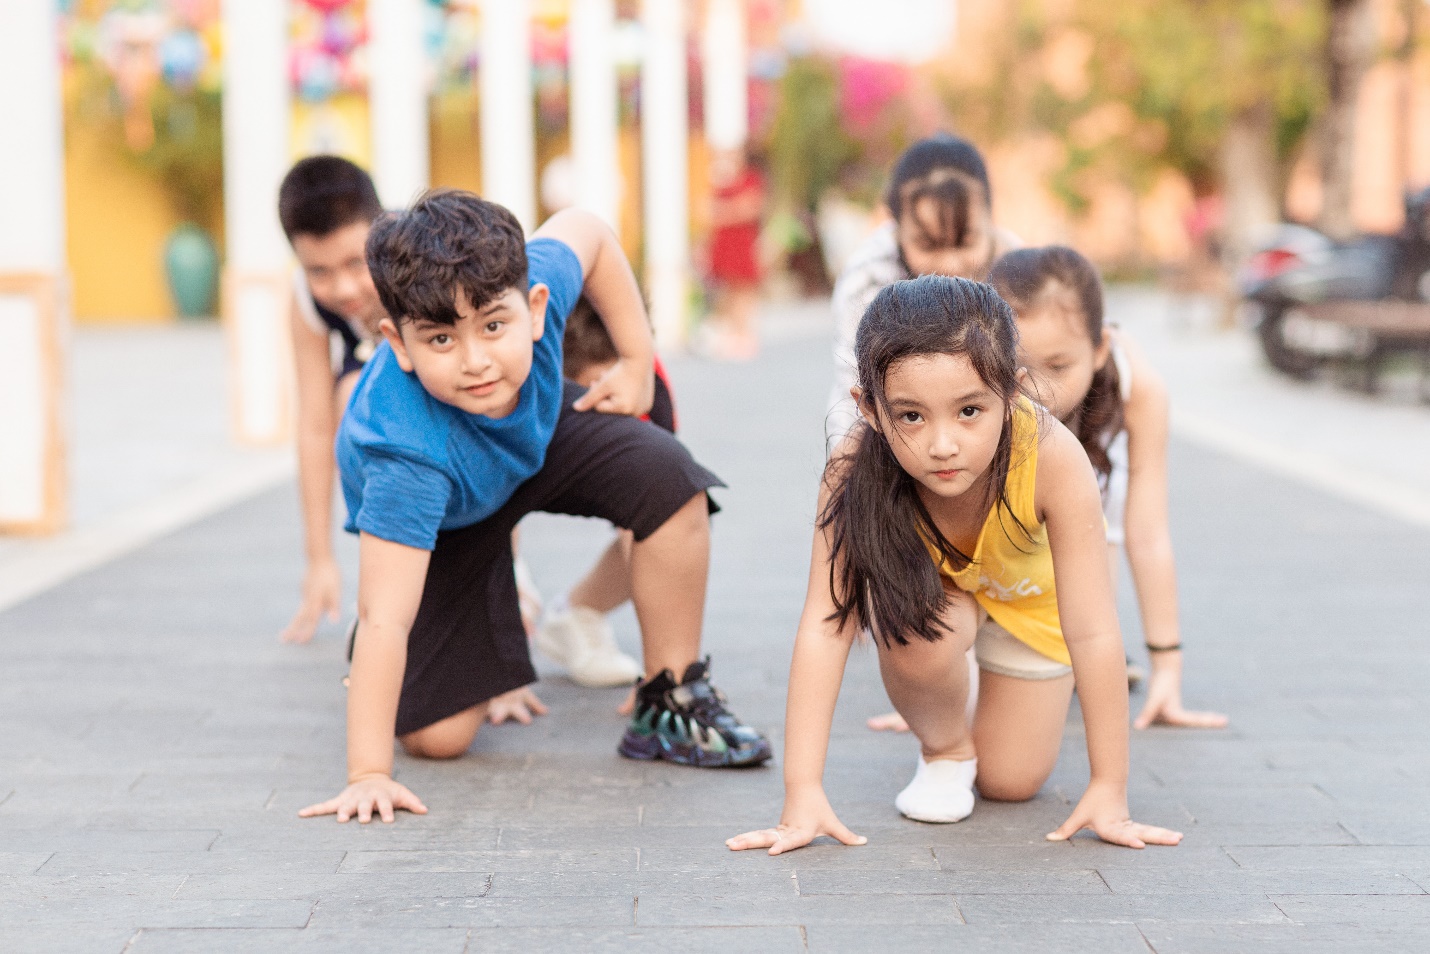 Chạy bộ giúp trẻ phát triển toàn diện về thể chất và tinh thần: Tăng mật độ xương, cải thiện khả năng học tập và hình thành lối sống tích cực